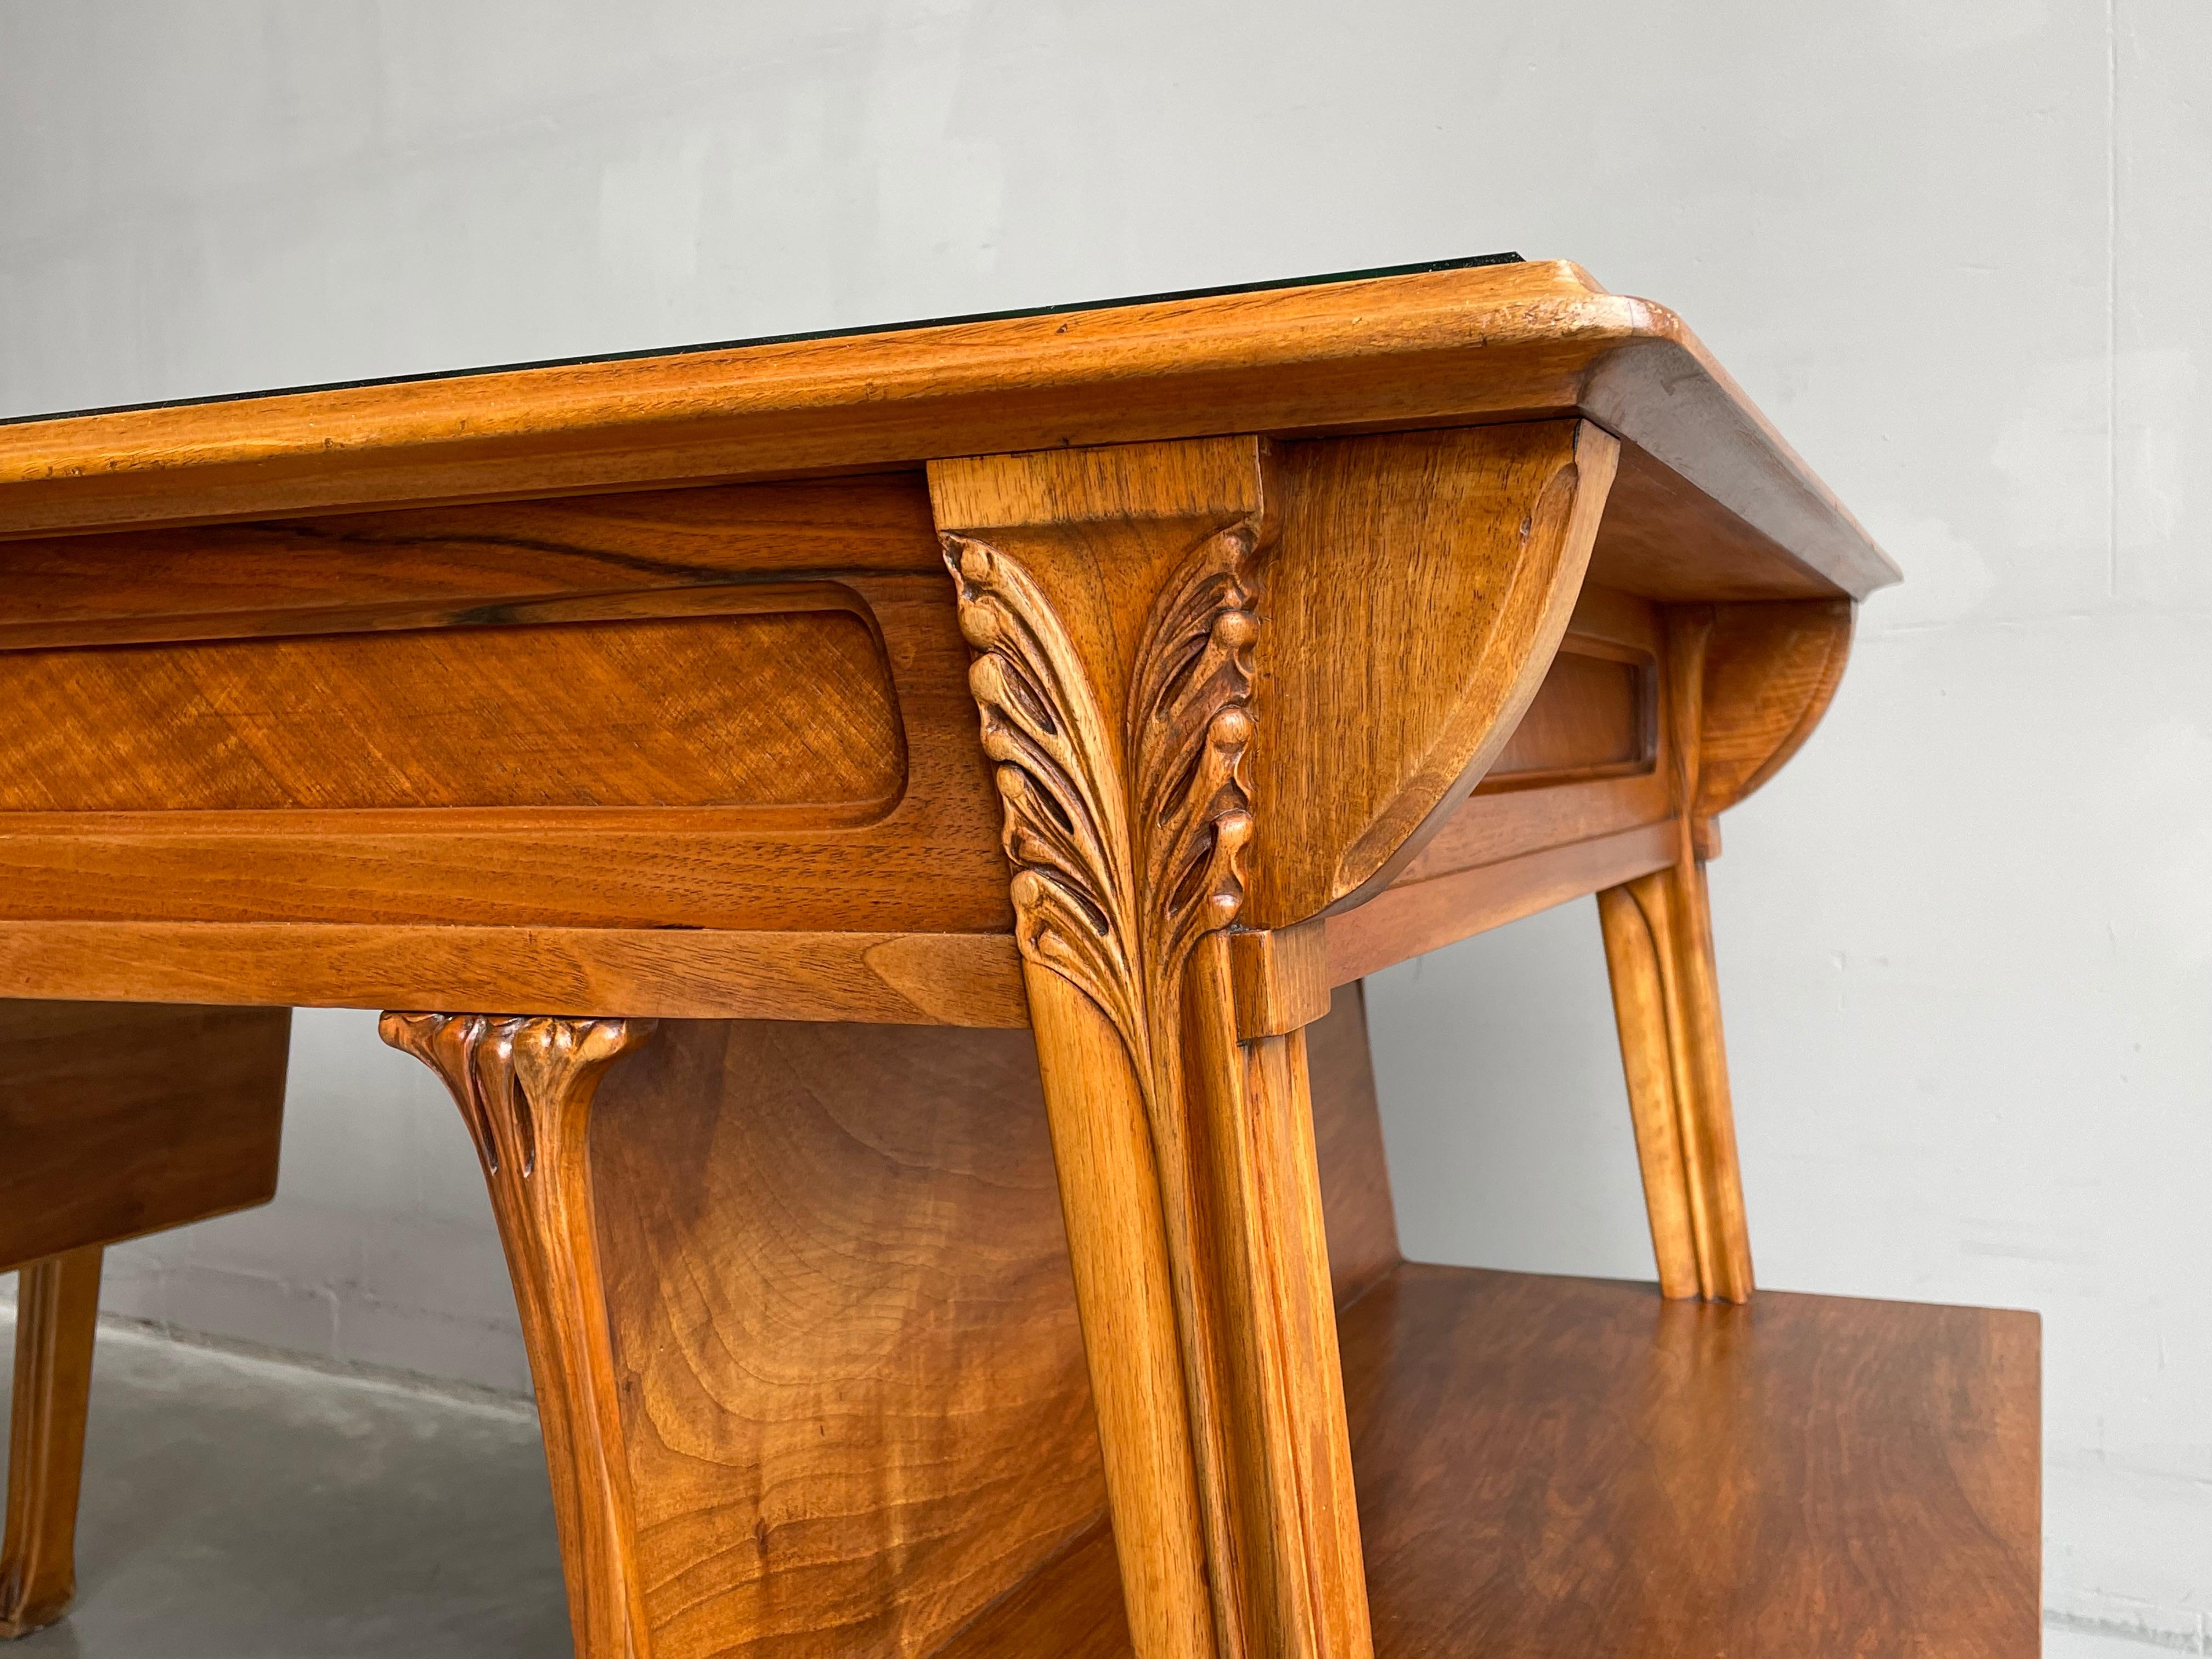 Important Louis Majorelle Art Nouveau Desk and Chair, Bookcase & Filing Cabinet For Sale 7